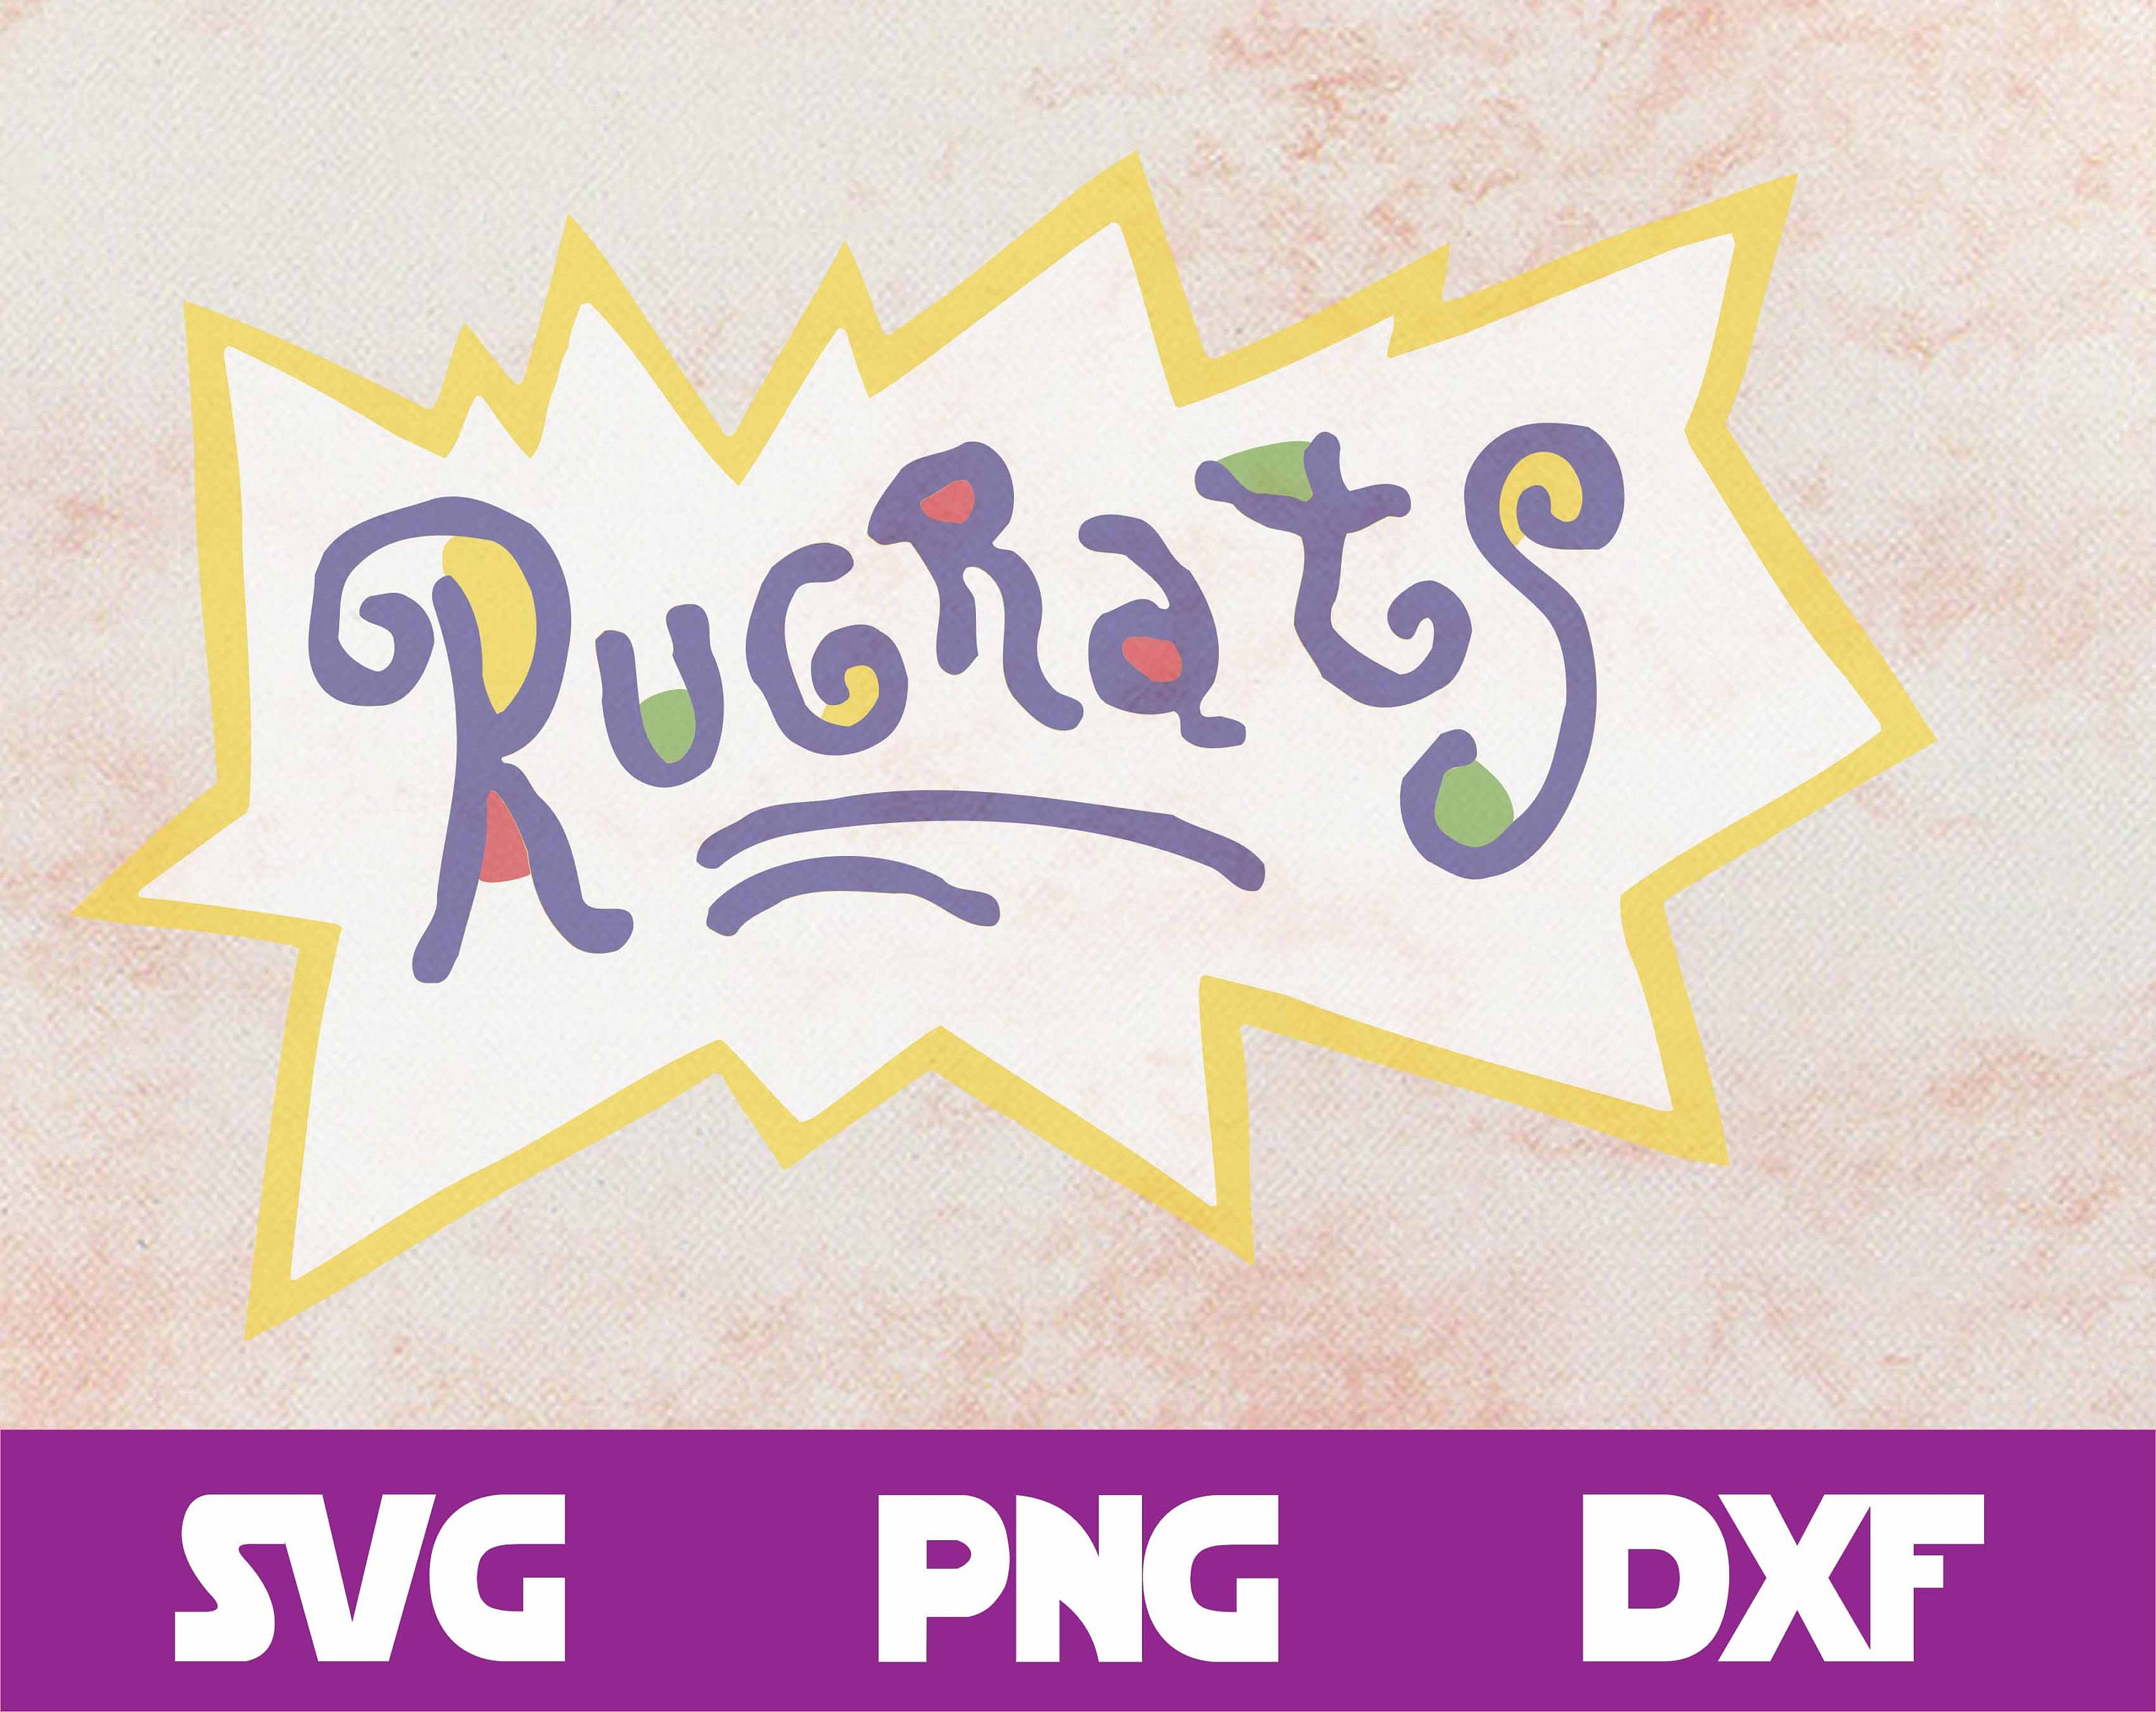 Download Rugrats svg bundle Rugrats set 18 svg designs Rugrats svg ...